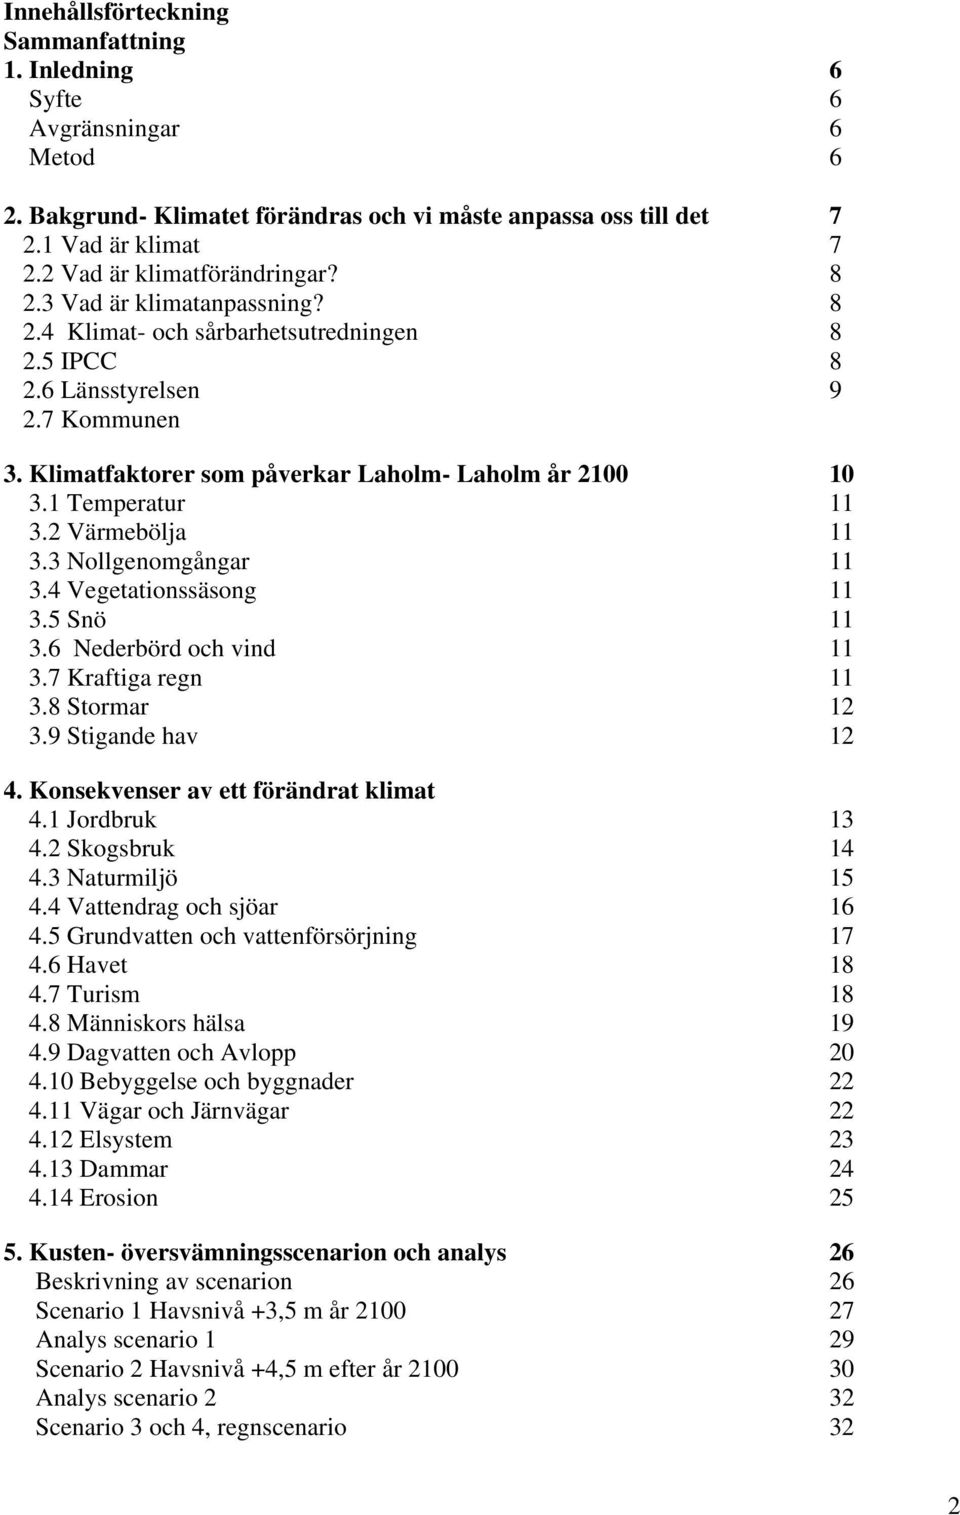 Klimatfaktorer som påverkar Laholm- Laholm år 2100 10 3.1 Temperatur 11 3.2 Värmebölja 11 3.3 Nollgenomgångar 11 3.4 Vegetationssäsong 11 3.5 Snö 11 3.6 Nederbörd och vind 11 3.7 Kraftiga regn 11 3.